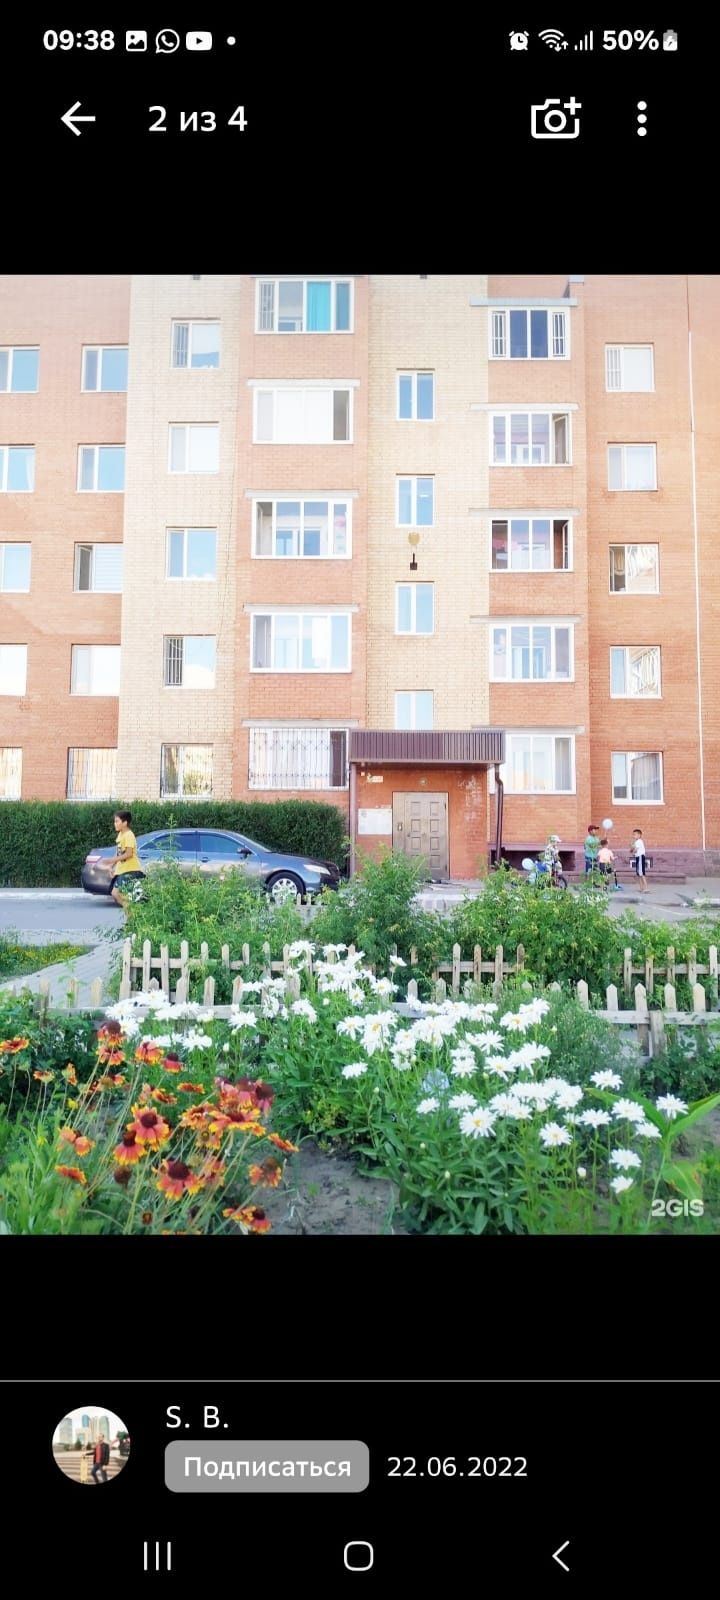 Продается 1комнатная квартира в Косшы.ЖК ЛЕСНАЯ ПОЛЯНА.